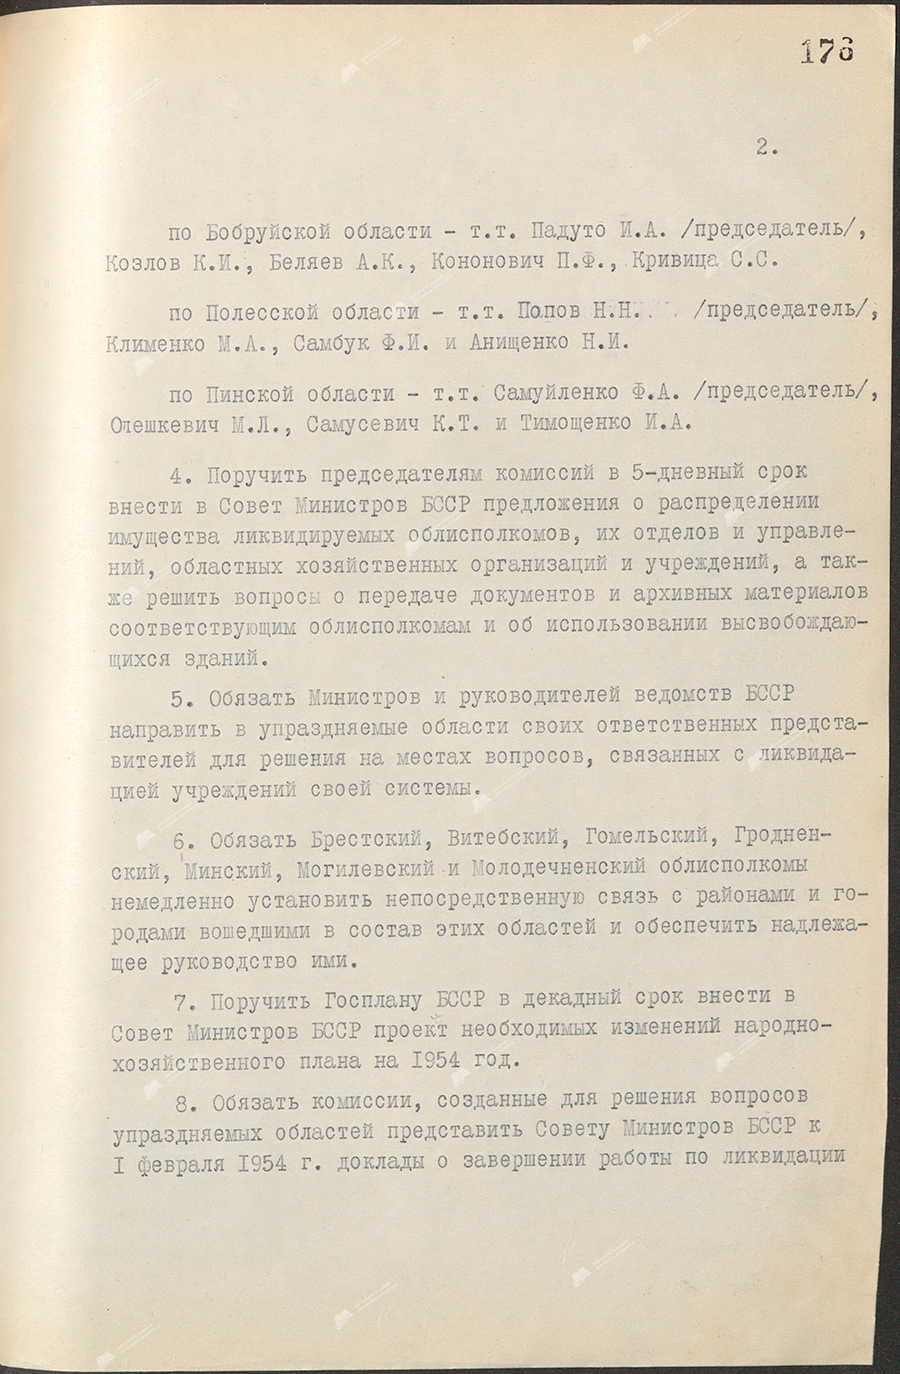 Beschluss Nr. 27 des Ministerrats der Weißrussischen SSR «Fragen der Abschaffung der Gebiete Baranowitschi, Bobruisk, Pinsk, Polesie und Polozk»-с. 1